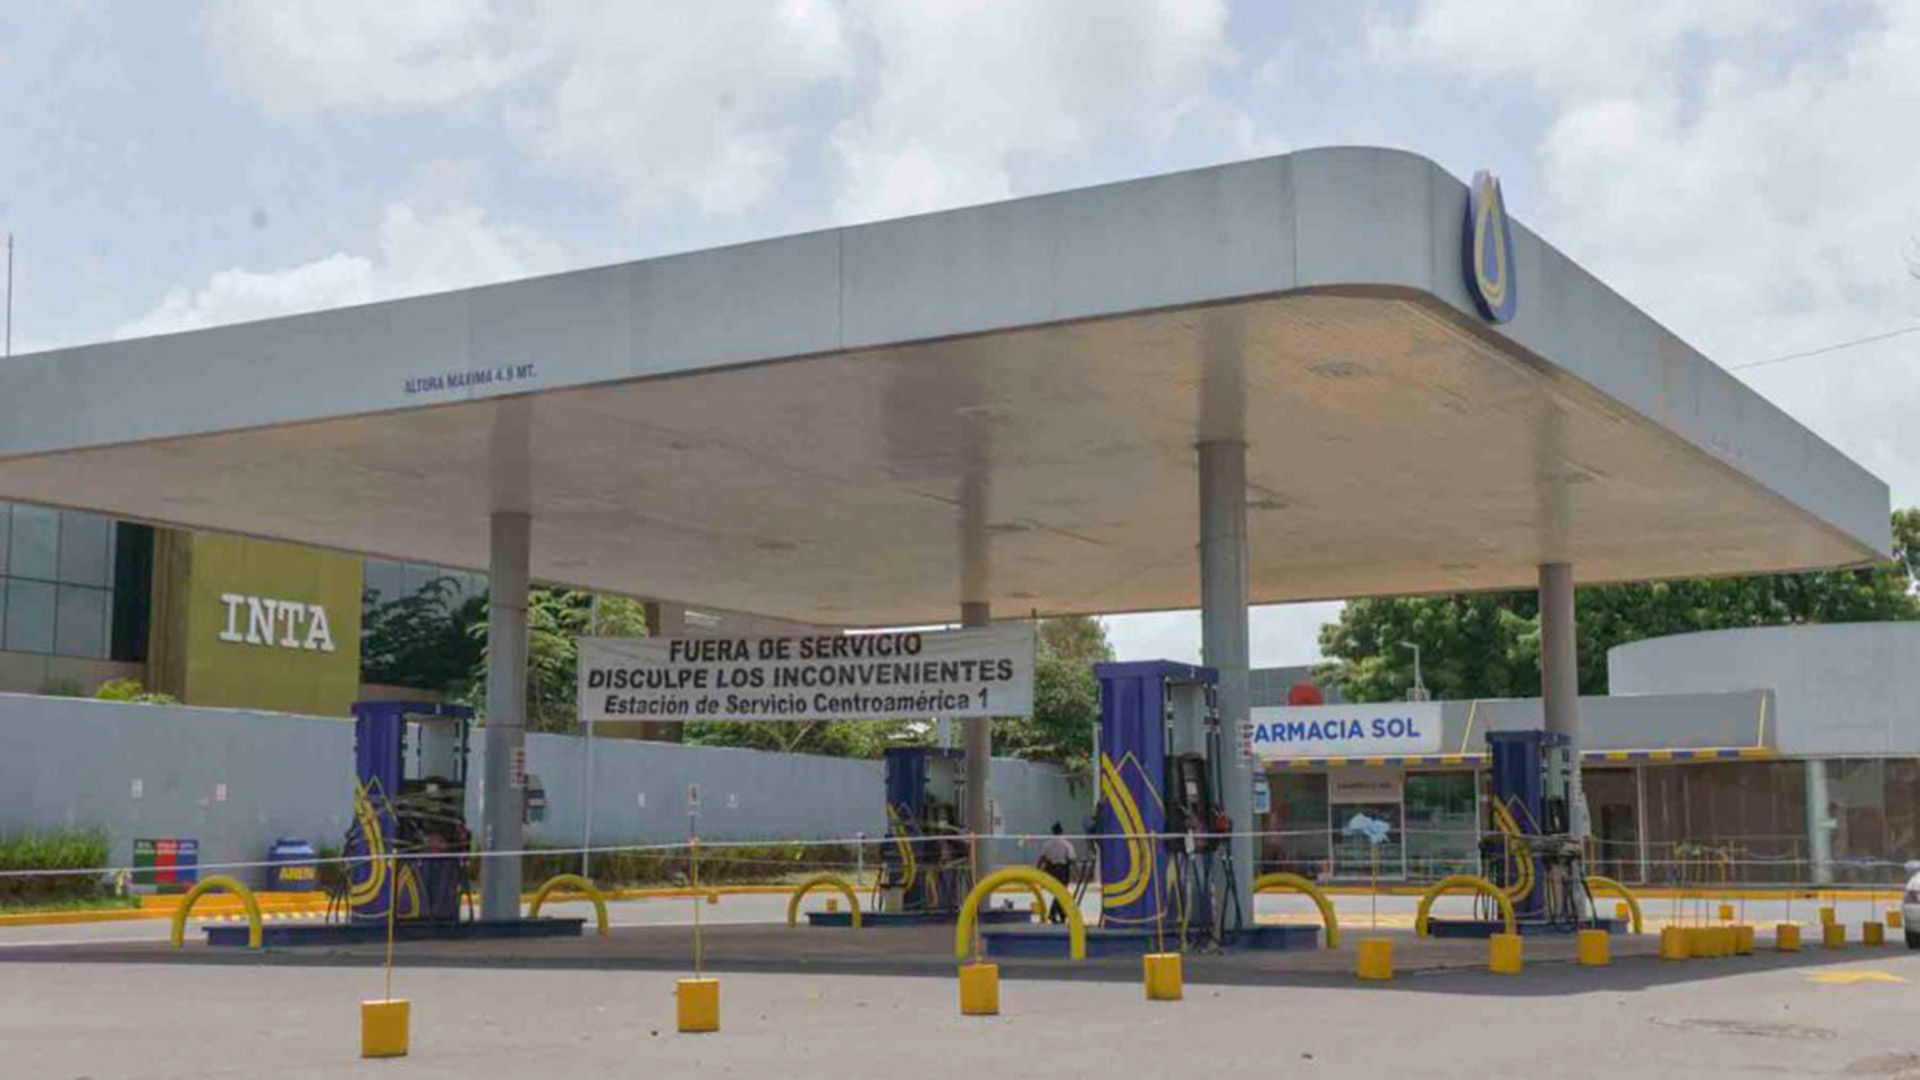 Las sanciones estadounidenses obligaron a cerrar las estaciones que antes manejaba la Distribuidora Nicaragüense de Petróleo (DNP), una empresa que fue estatal y sin explicación oficial pasó a manos privadas. (Foto La Prensa)